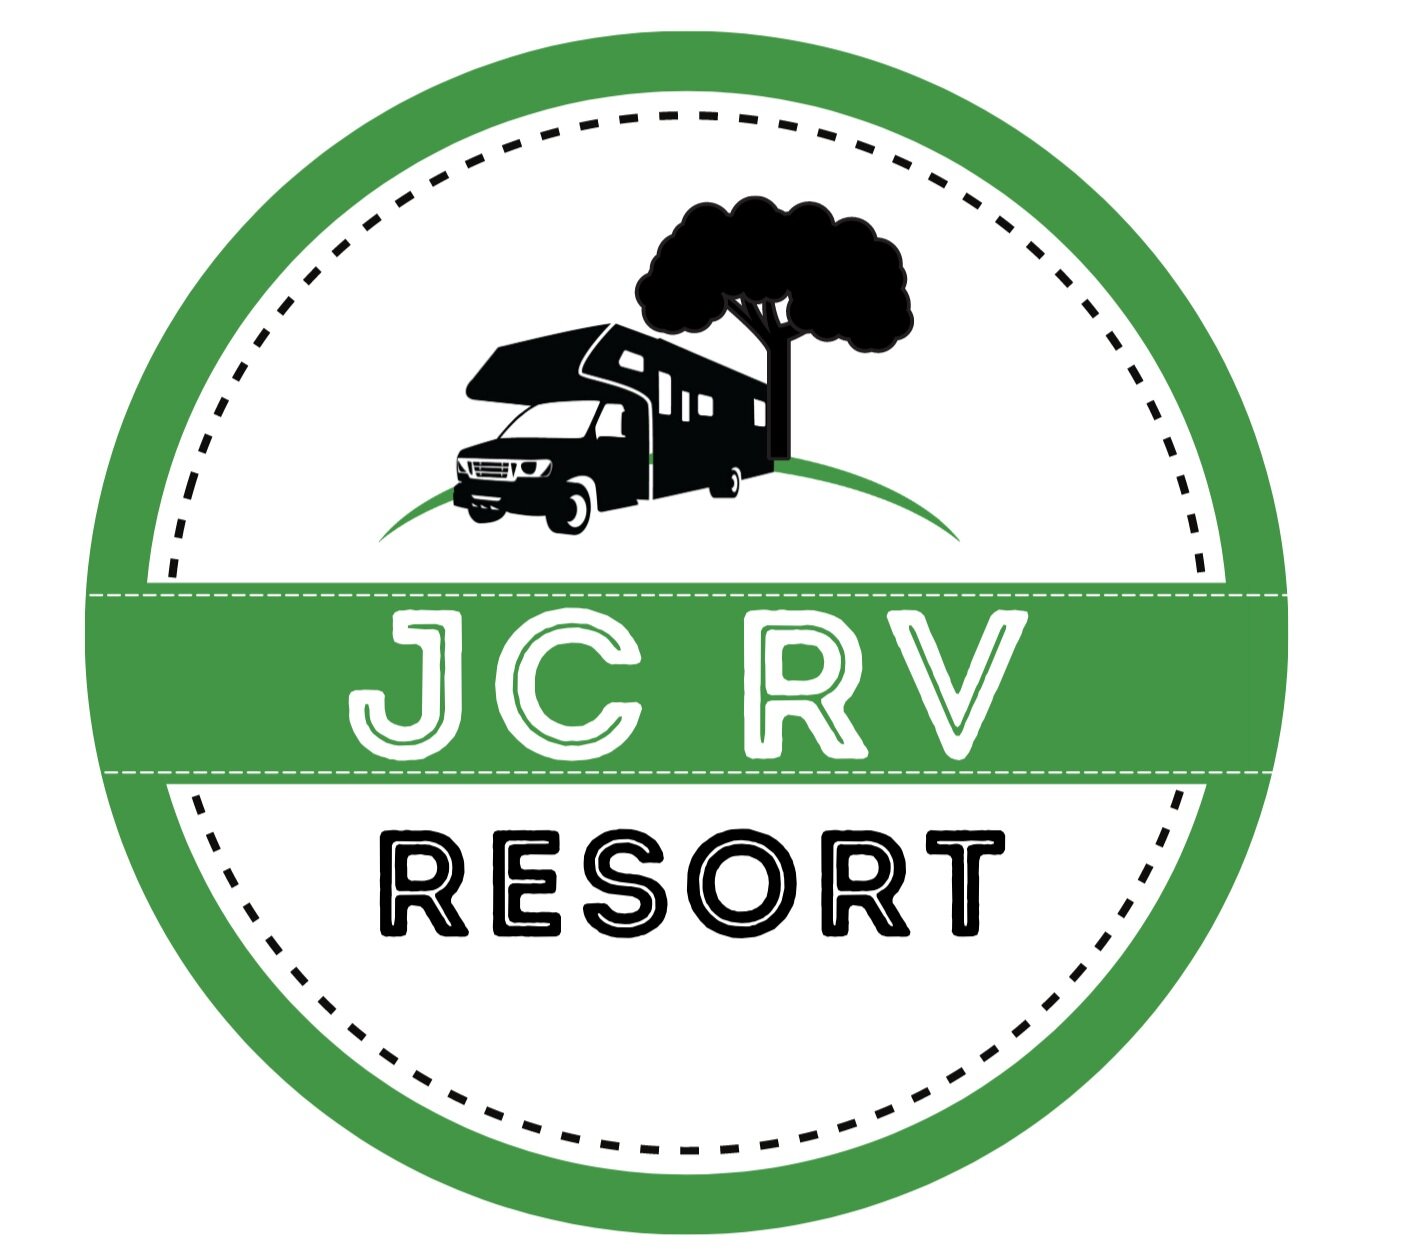 JC RV Resort